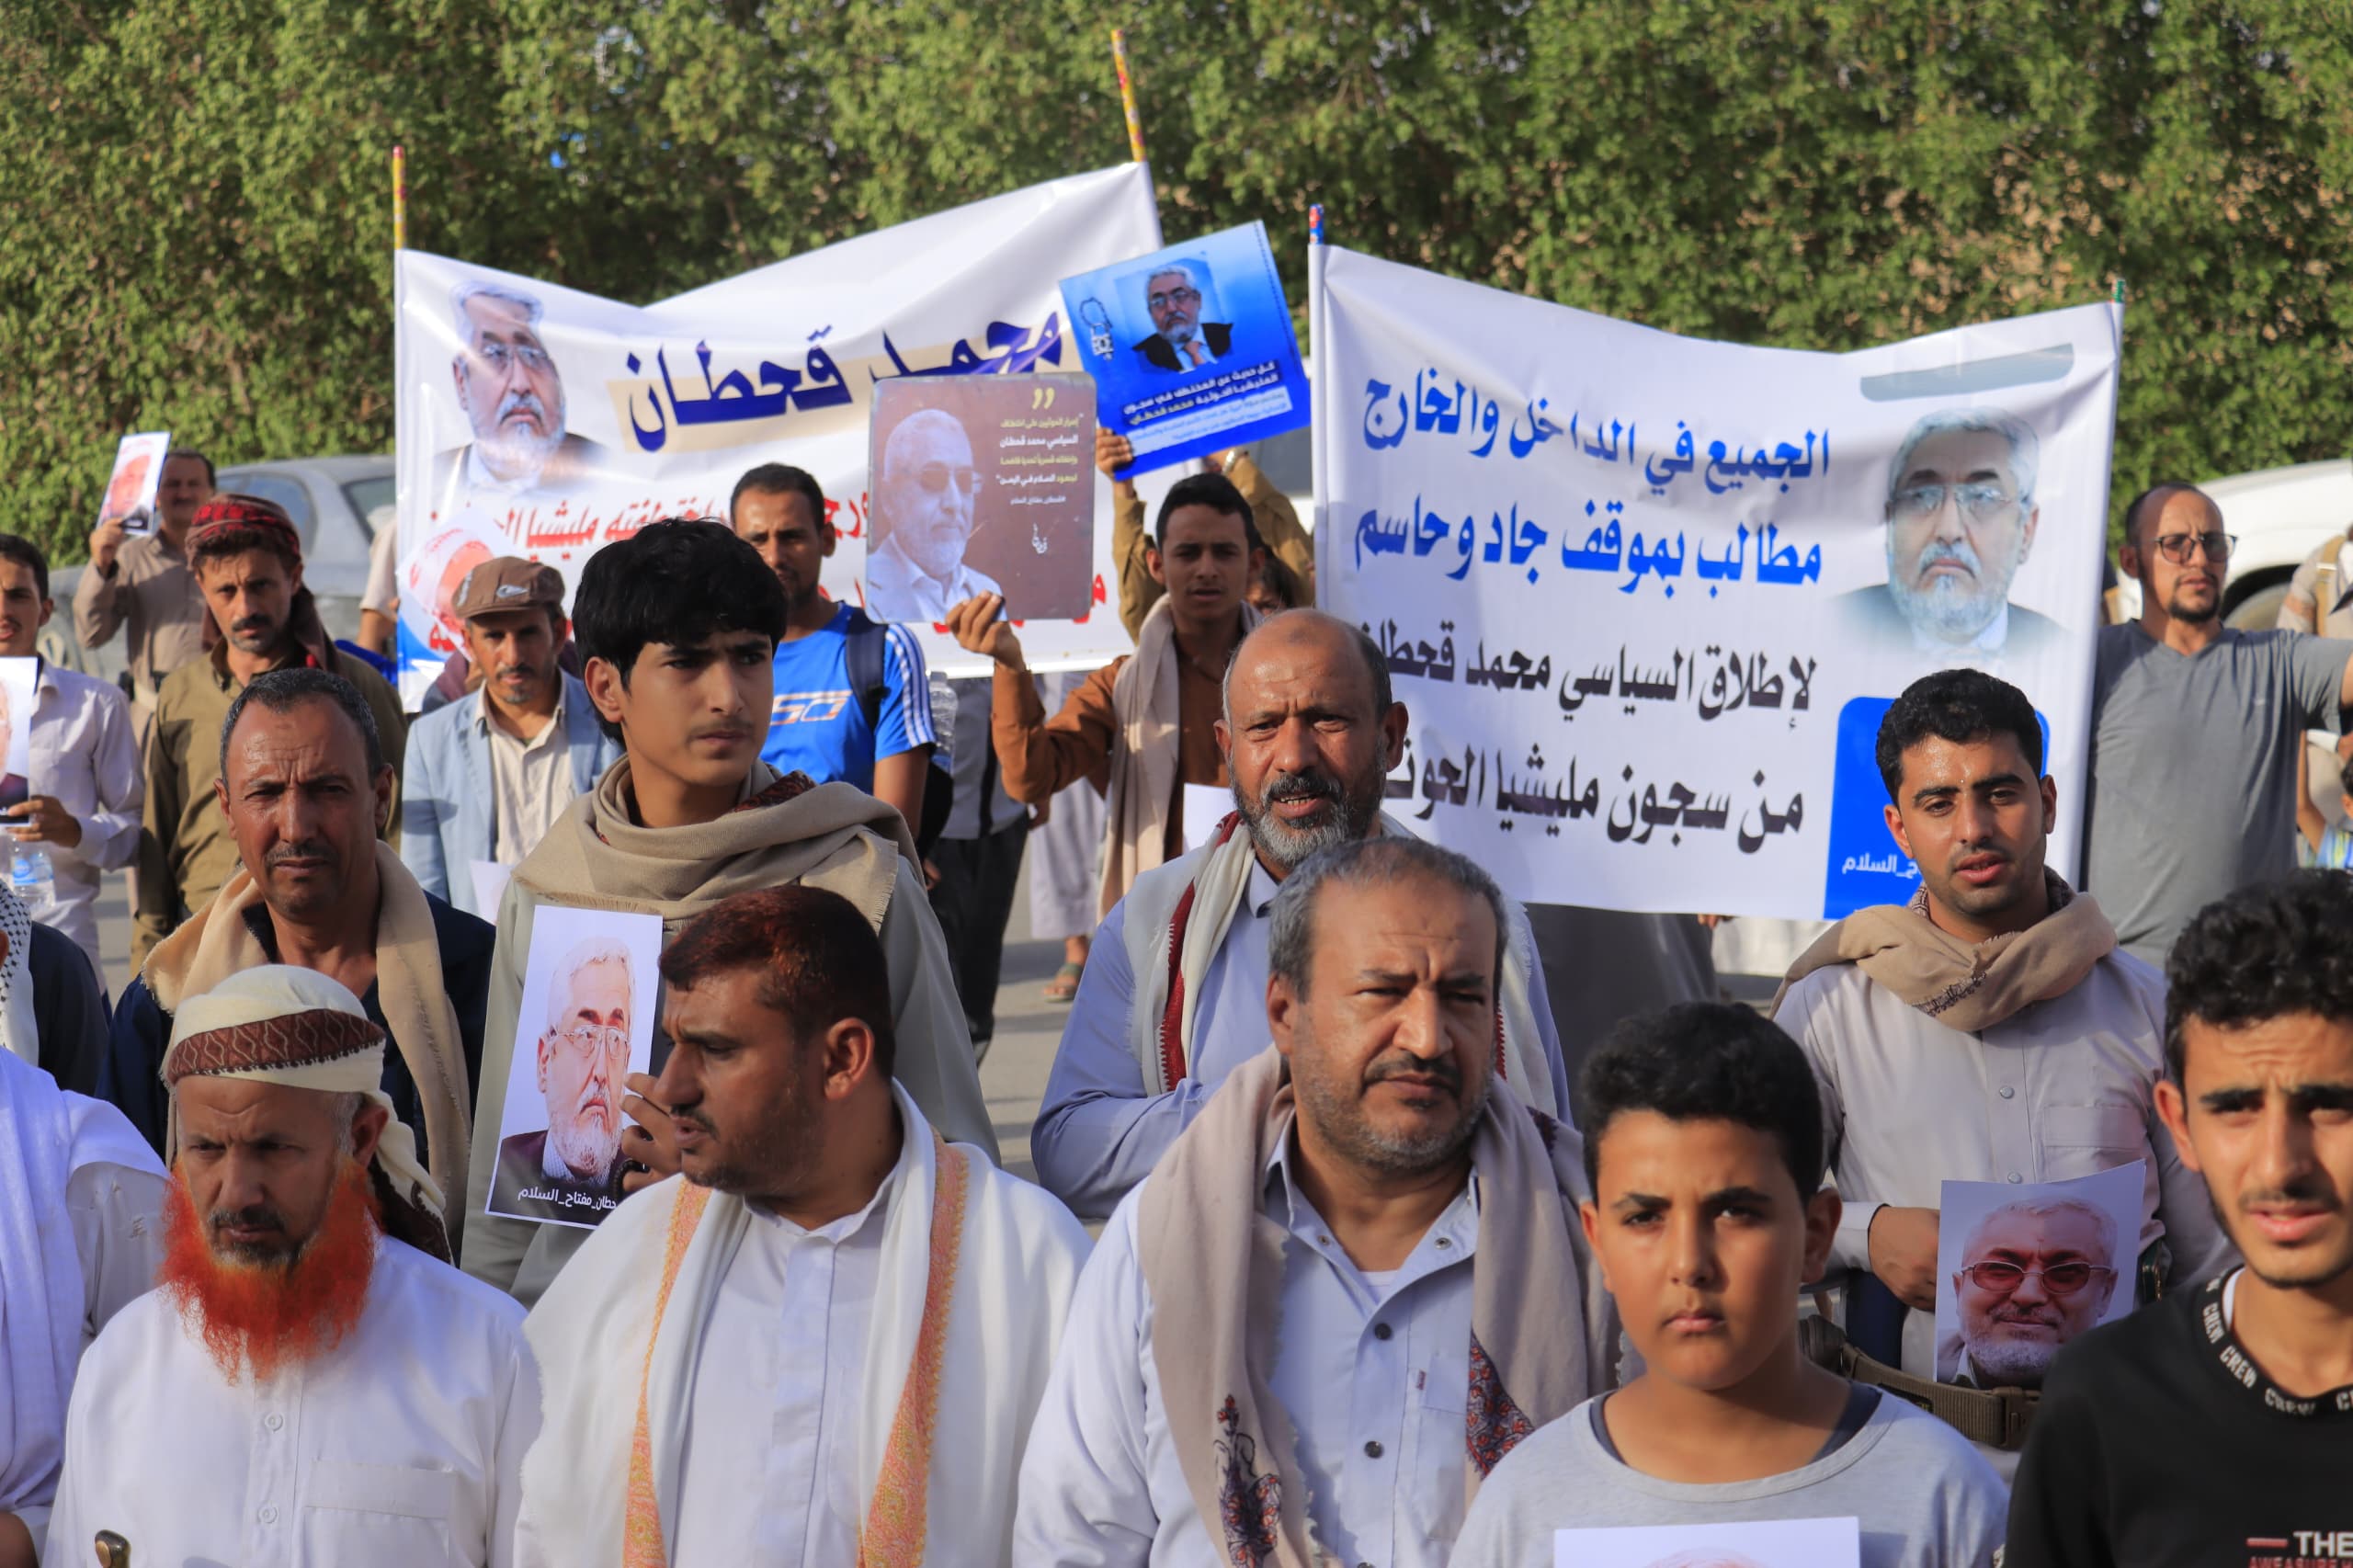 وقفة احتجاجية لأبناء أمانة العاصمة تطالب بسرعة الإفراج عن السياسي "محمد قحطان"